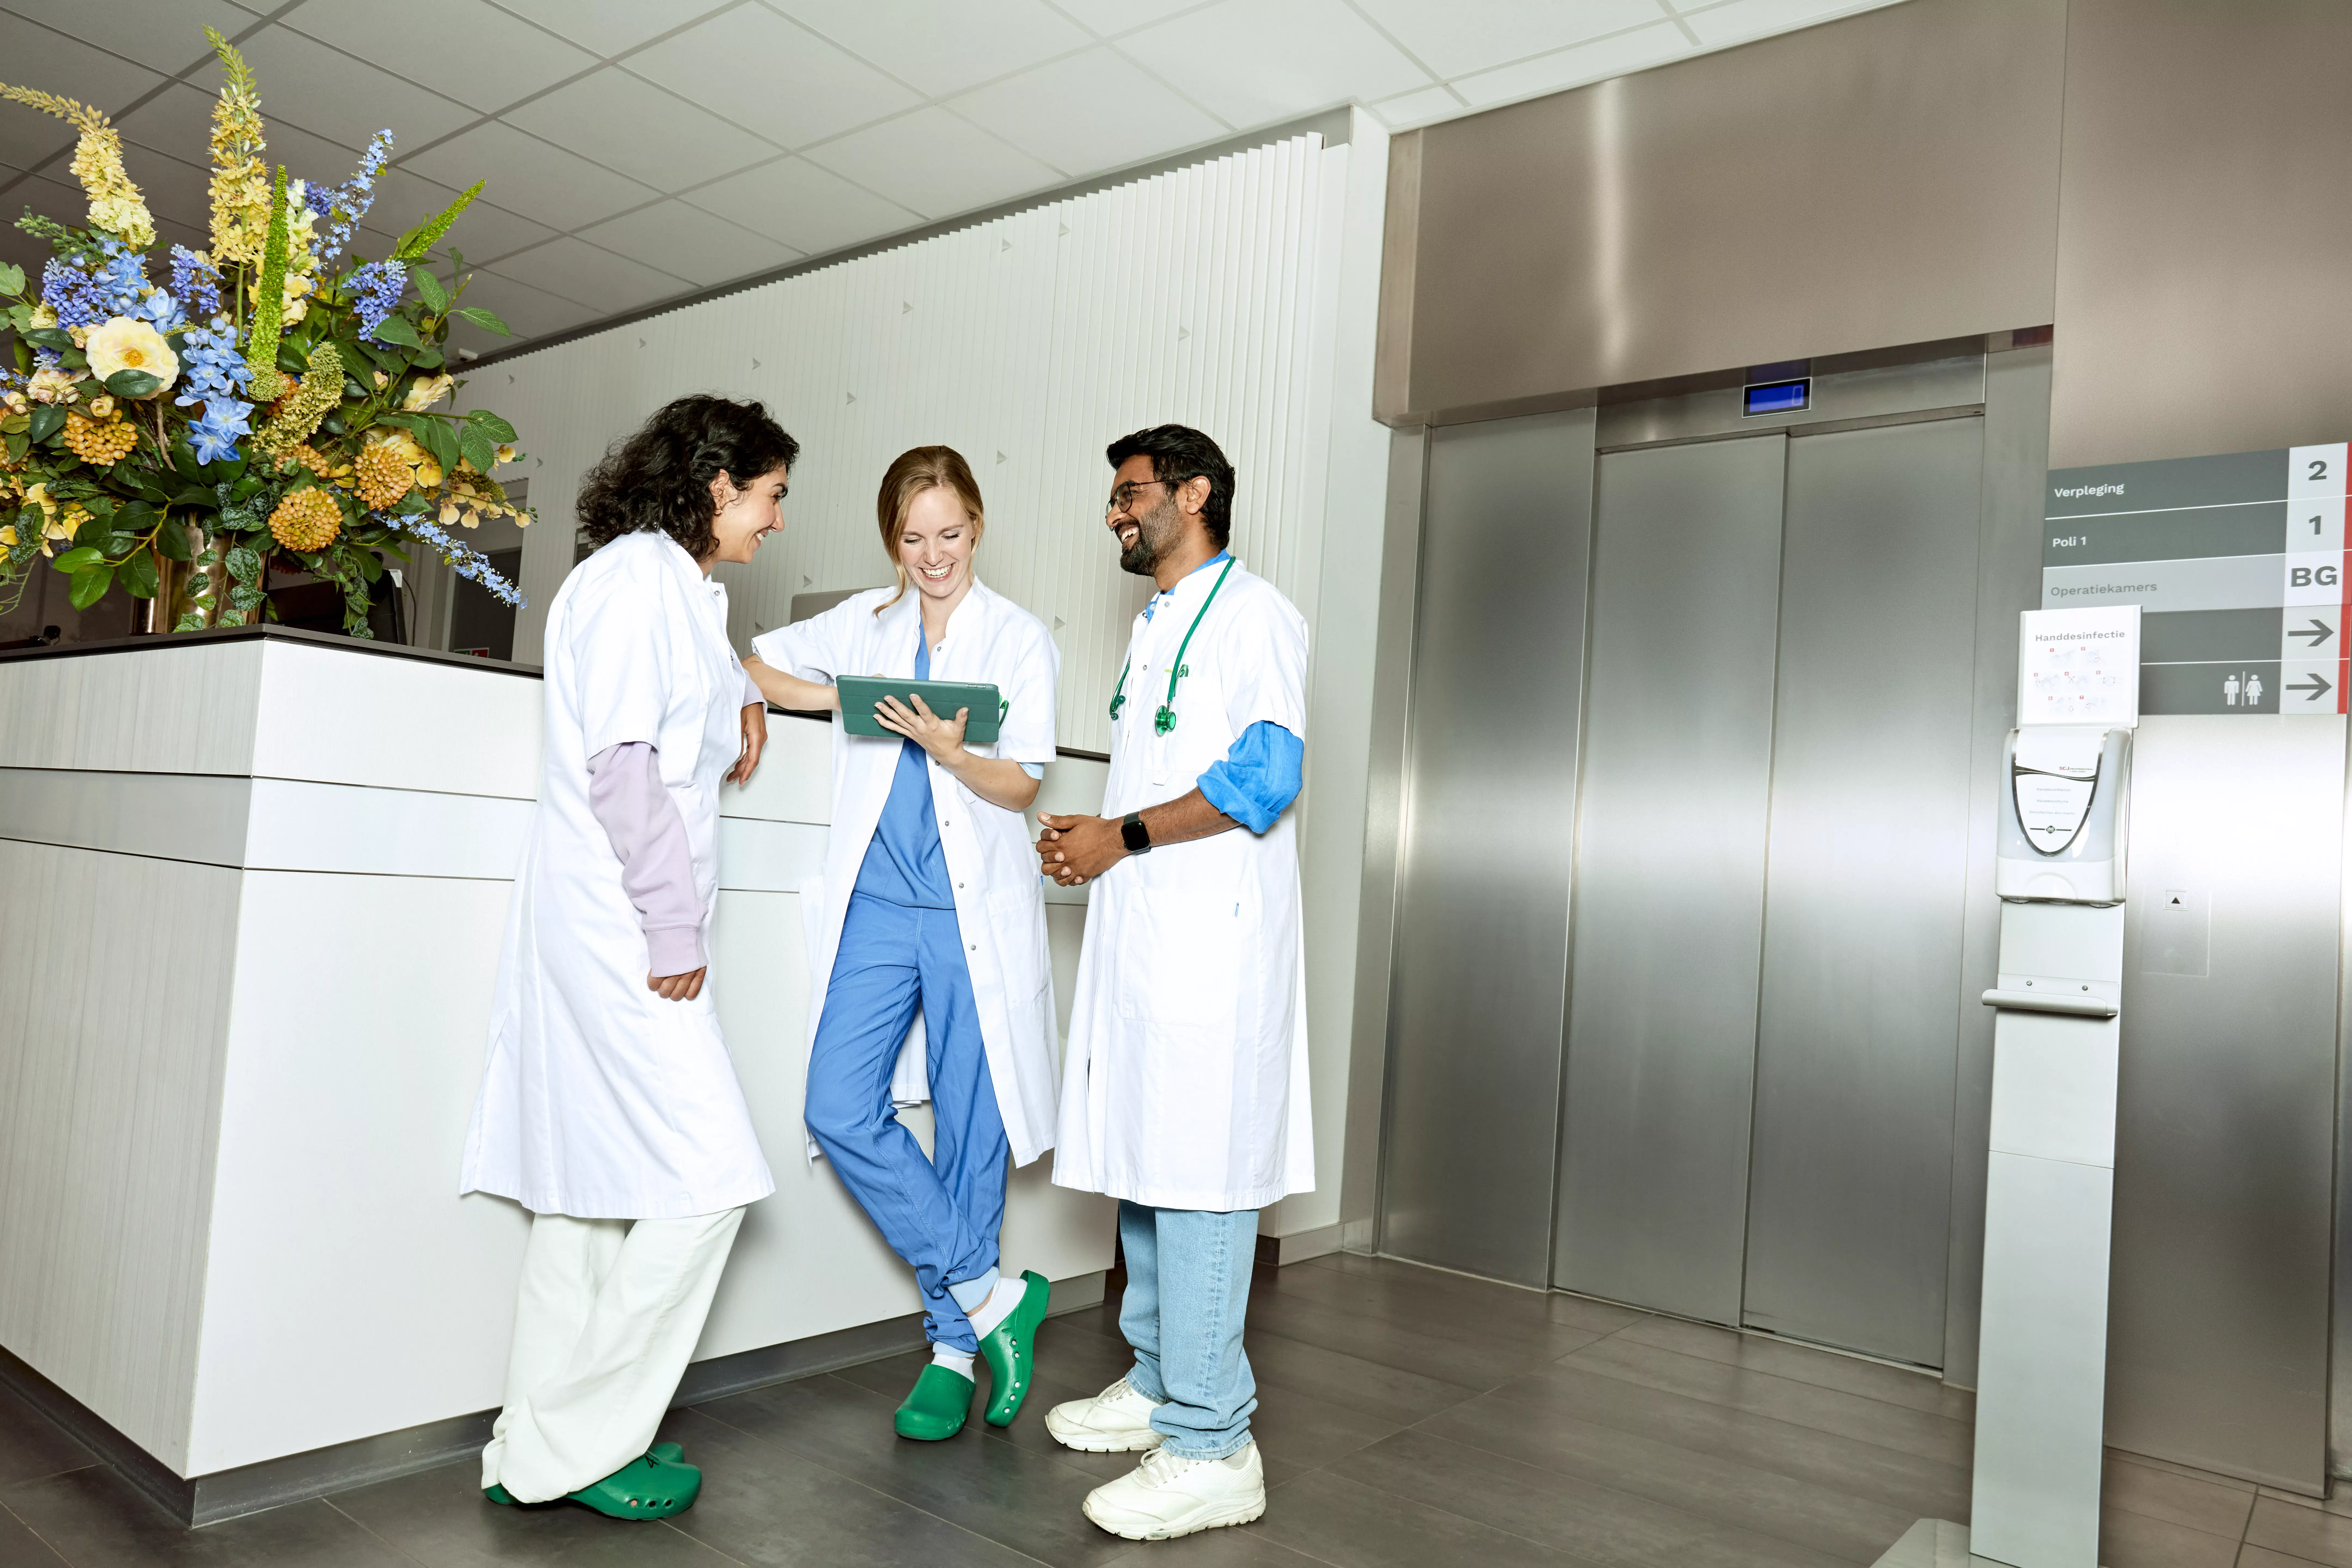 Drie artsen staan lachend aan de balie van een ziekenhuis met een tablet